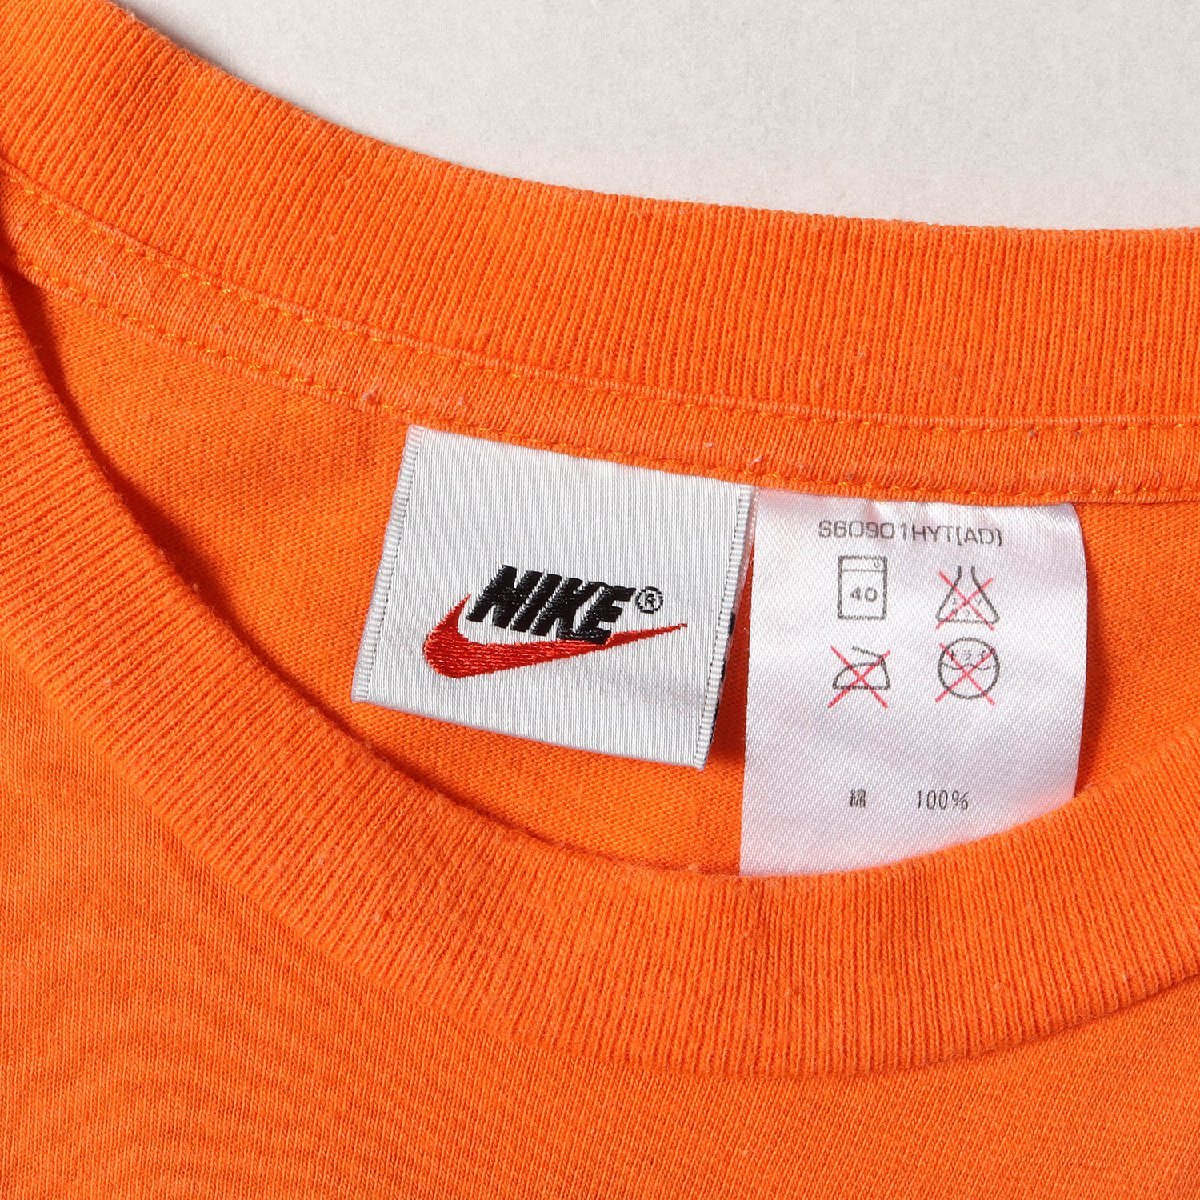 NIKE ナイキ Tシャツ サイズ:L 90s かすれロゴ クルーネック 半袖Tシャツ オレンジ 90年代 vintage ヴィンテージ 古着 トップス_画像3